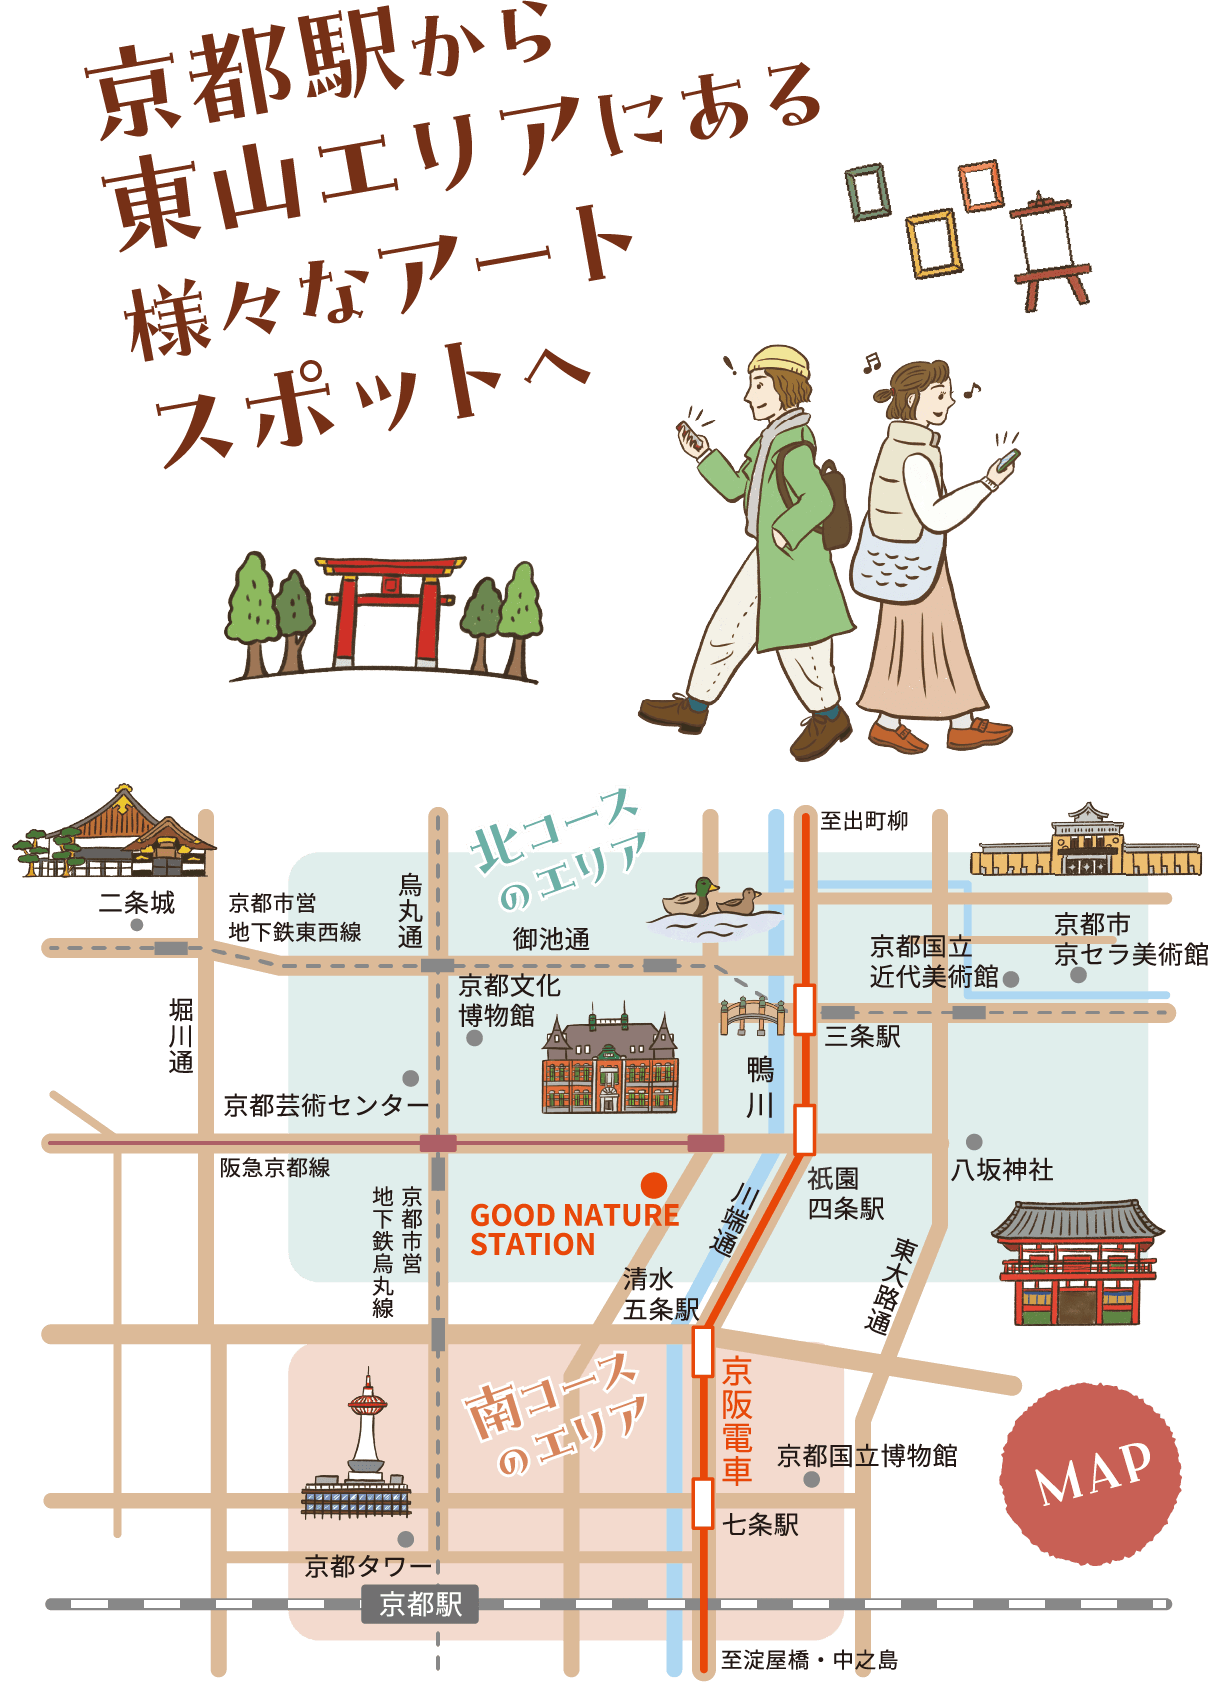 京都駅から東山エリアにある様々なアートスポットへ